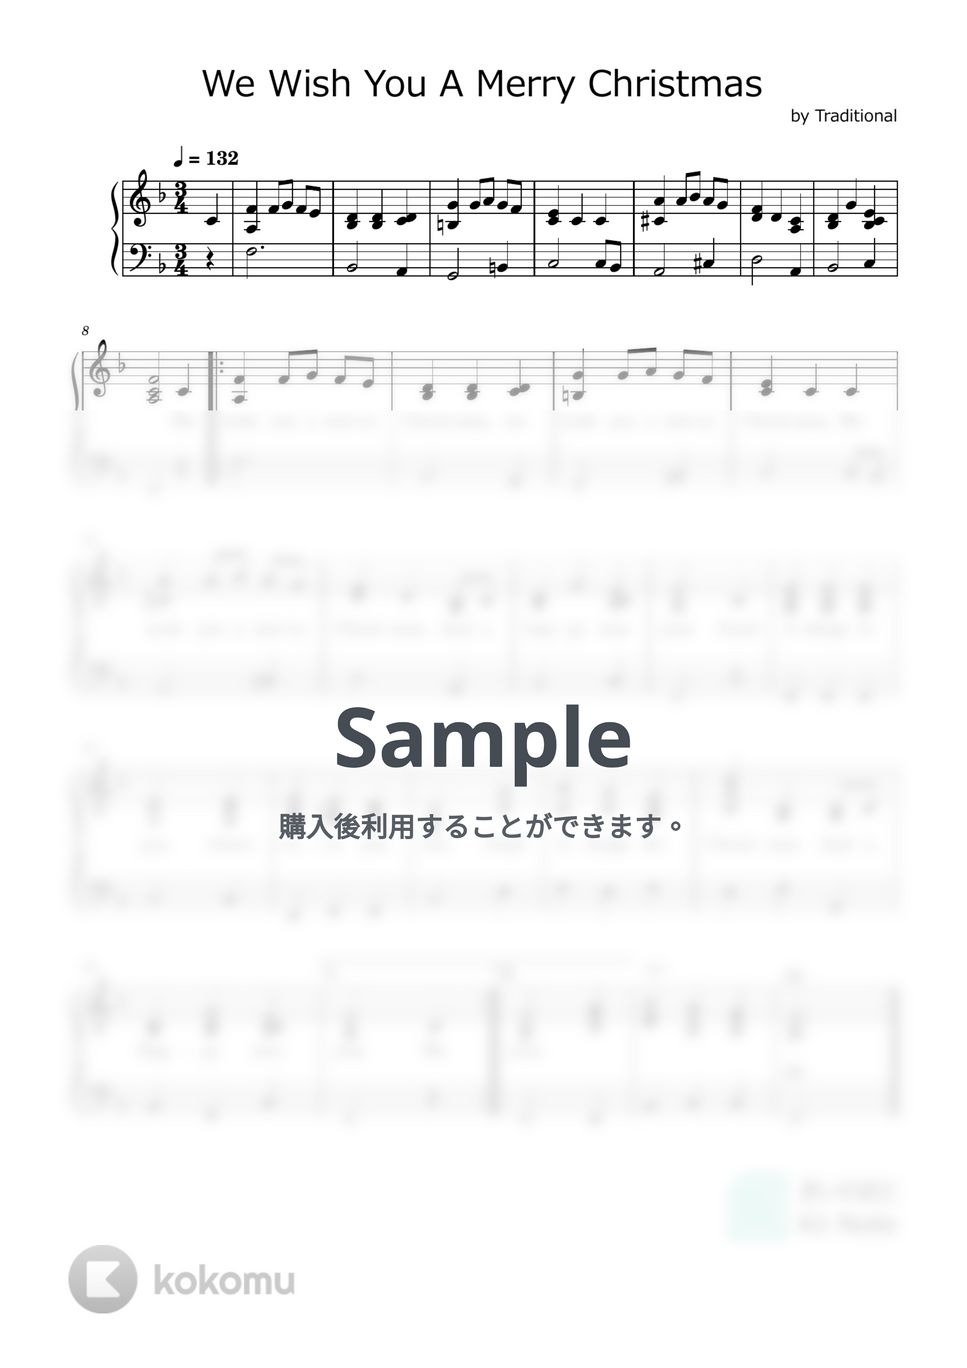 クリスマスソング - We Wish You A Merry Christmas (ピアノソロ（英語歌詞付）) by きいのおと- Kii Note